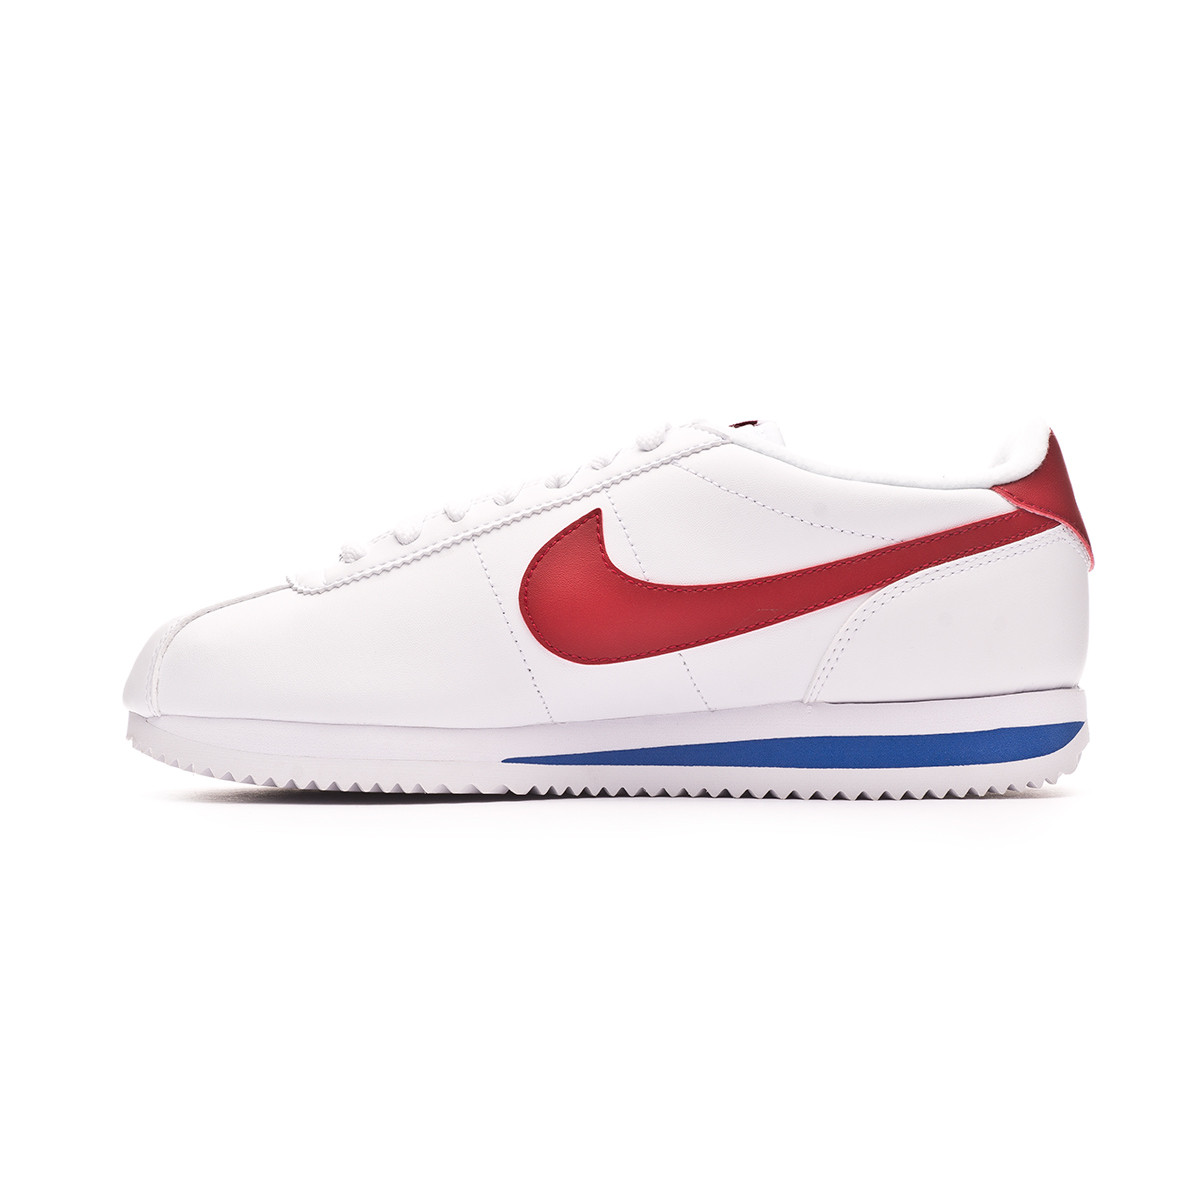 Scarpe Nike Cortez Basic Leather White-Varsity red-Varsity royal